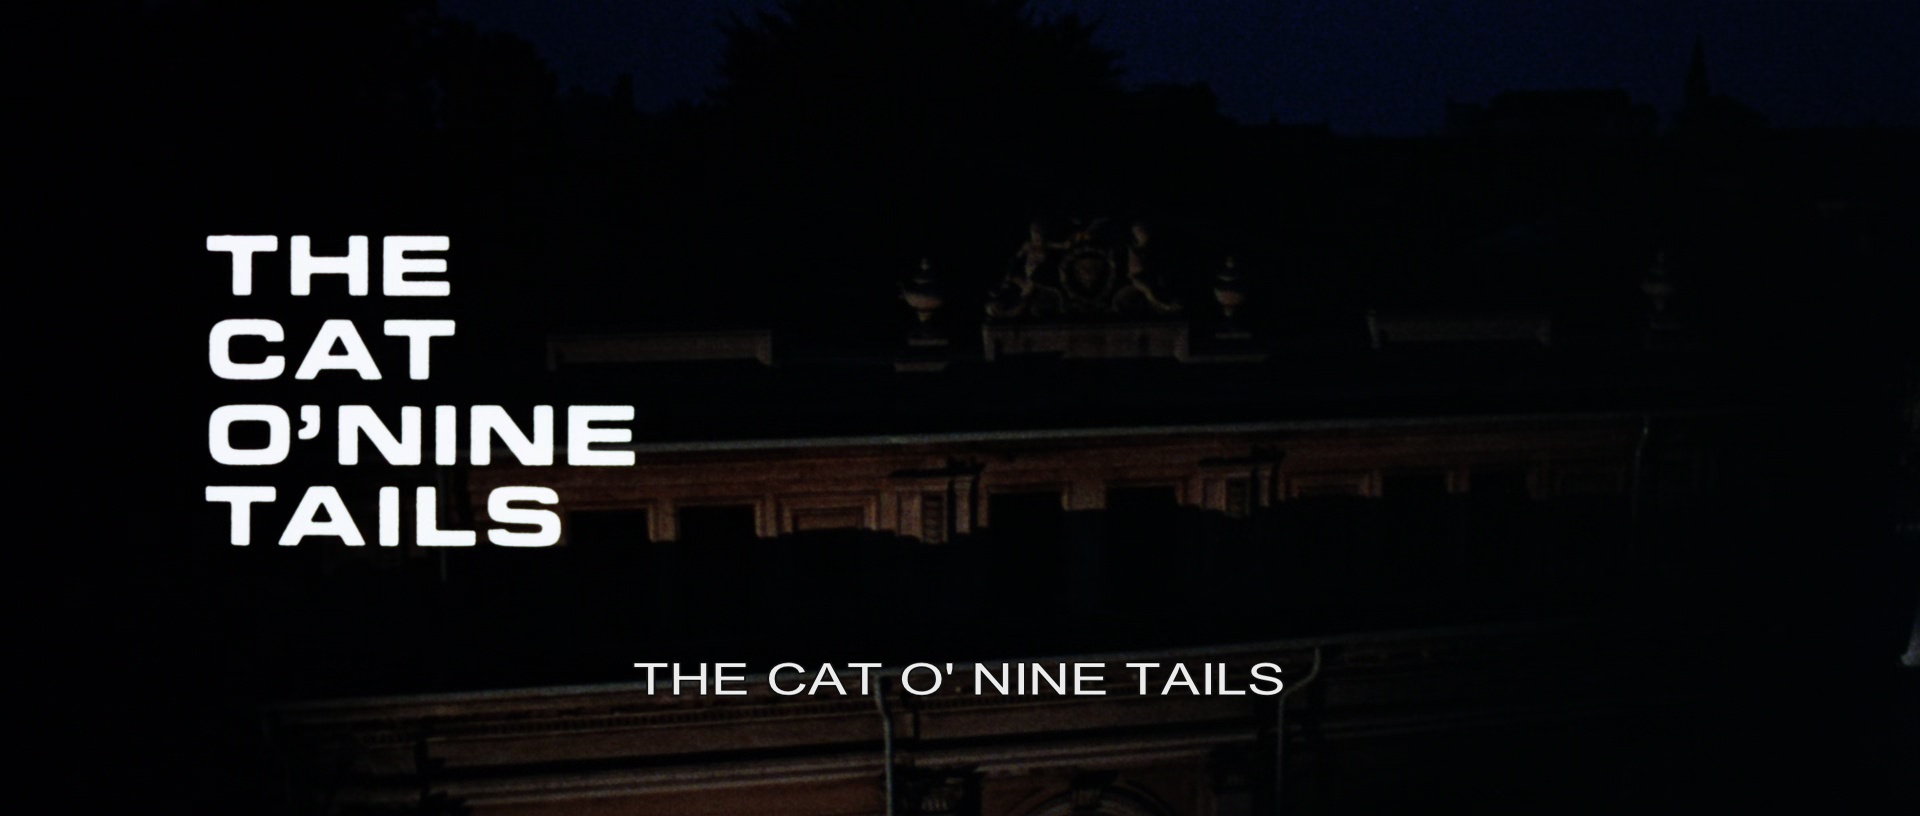 Il gatto a nove code (1971) - title.jpg